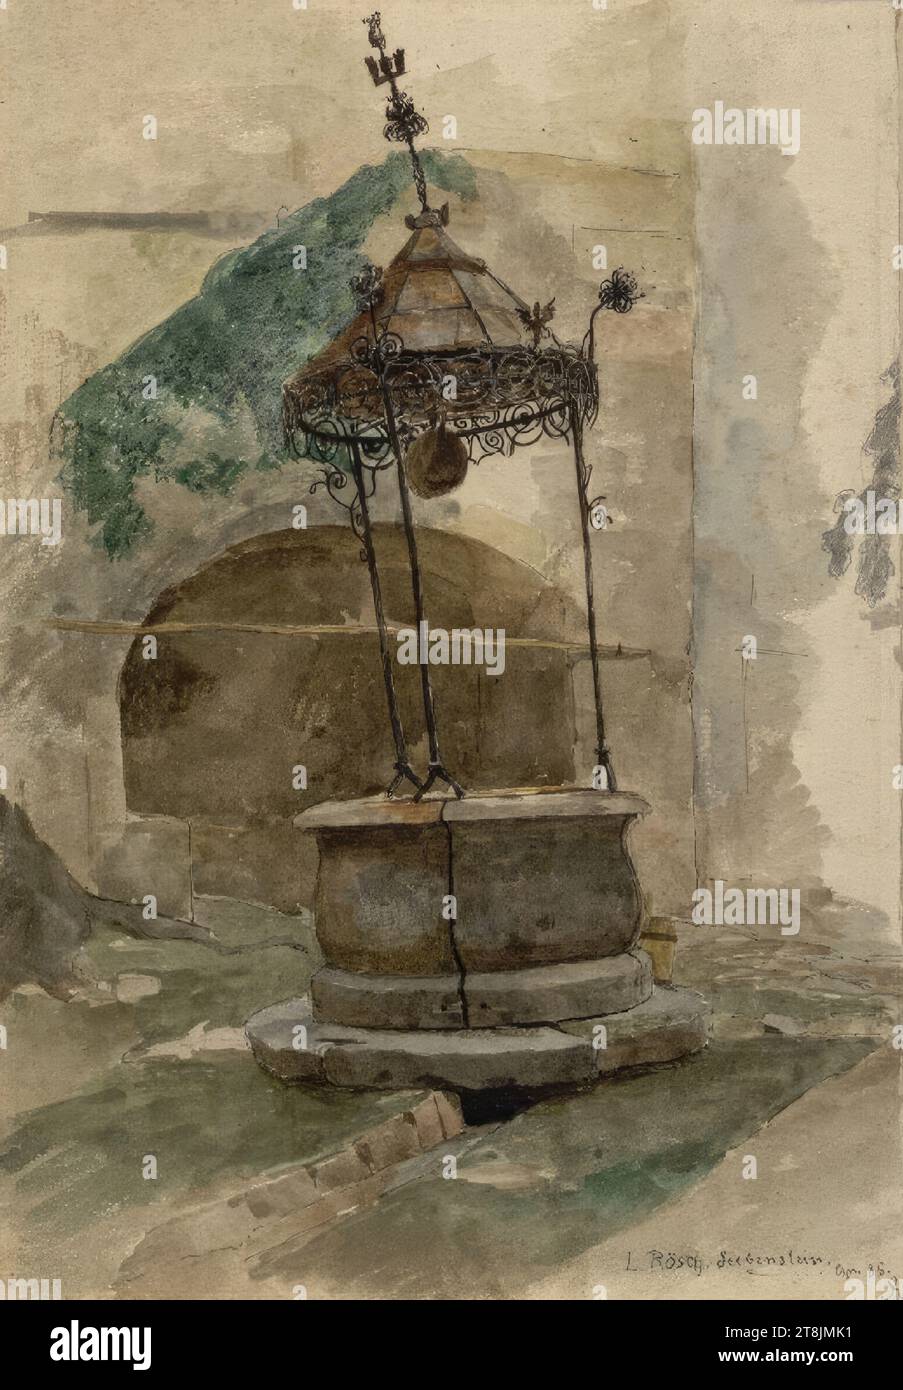 Fountain, Seebenstein, Ludwig Rösch, Vienna 1864 - 1936 Vienna, drawing, ink, pen, watercolor, 242 x 236 mm, right. 'L.Rösch Seebenstein, 85. R, Austria Stock Photo